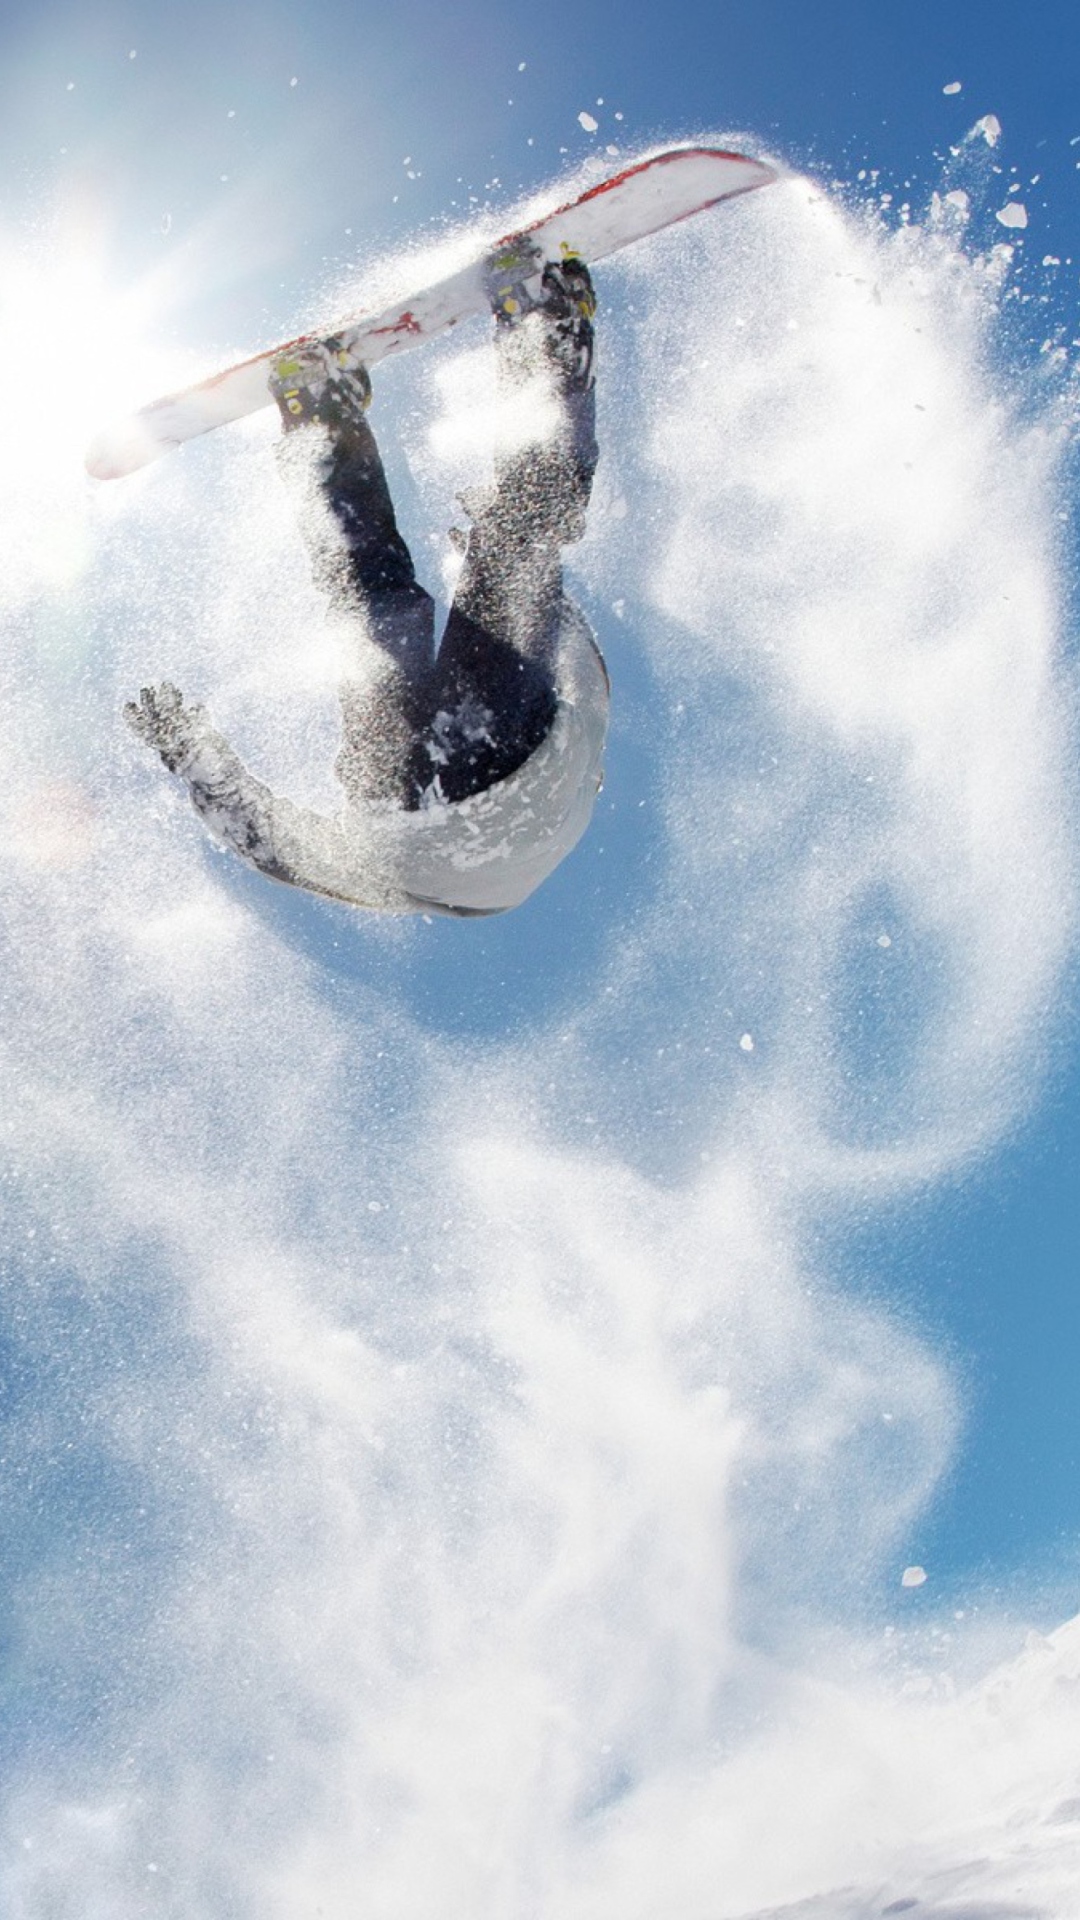 Snowboard Jump wallpaper 1080x1920